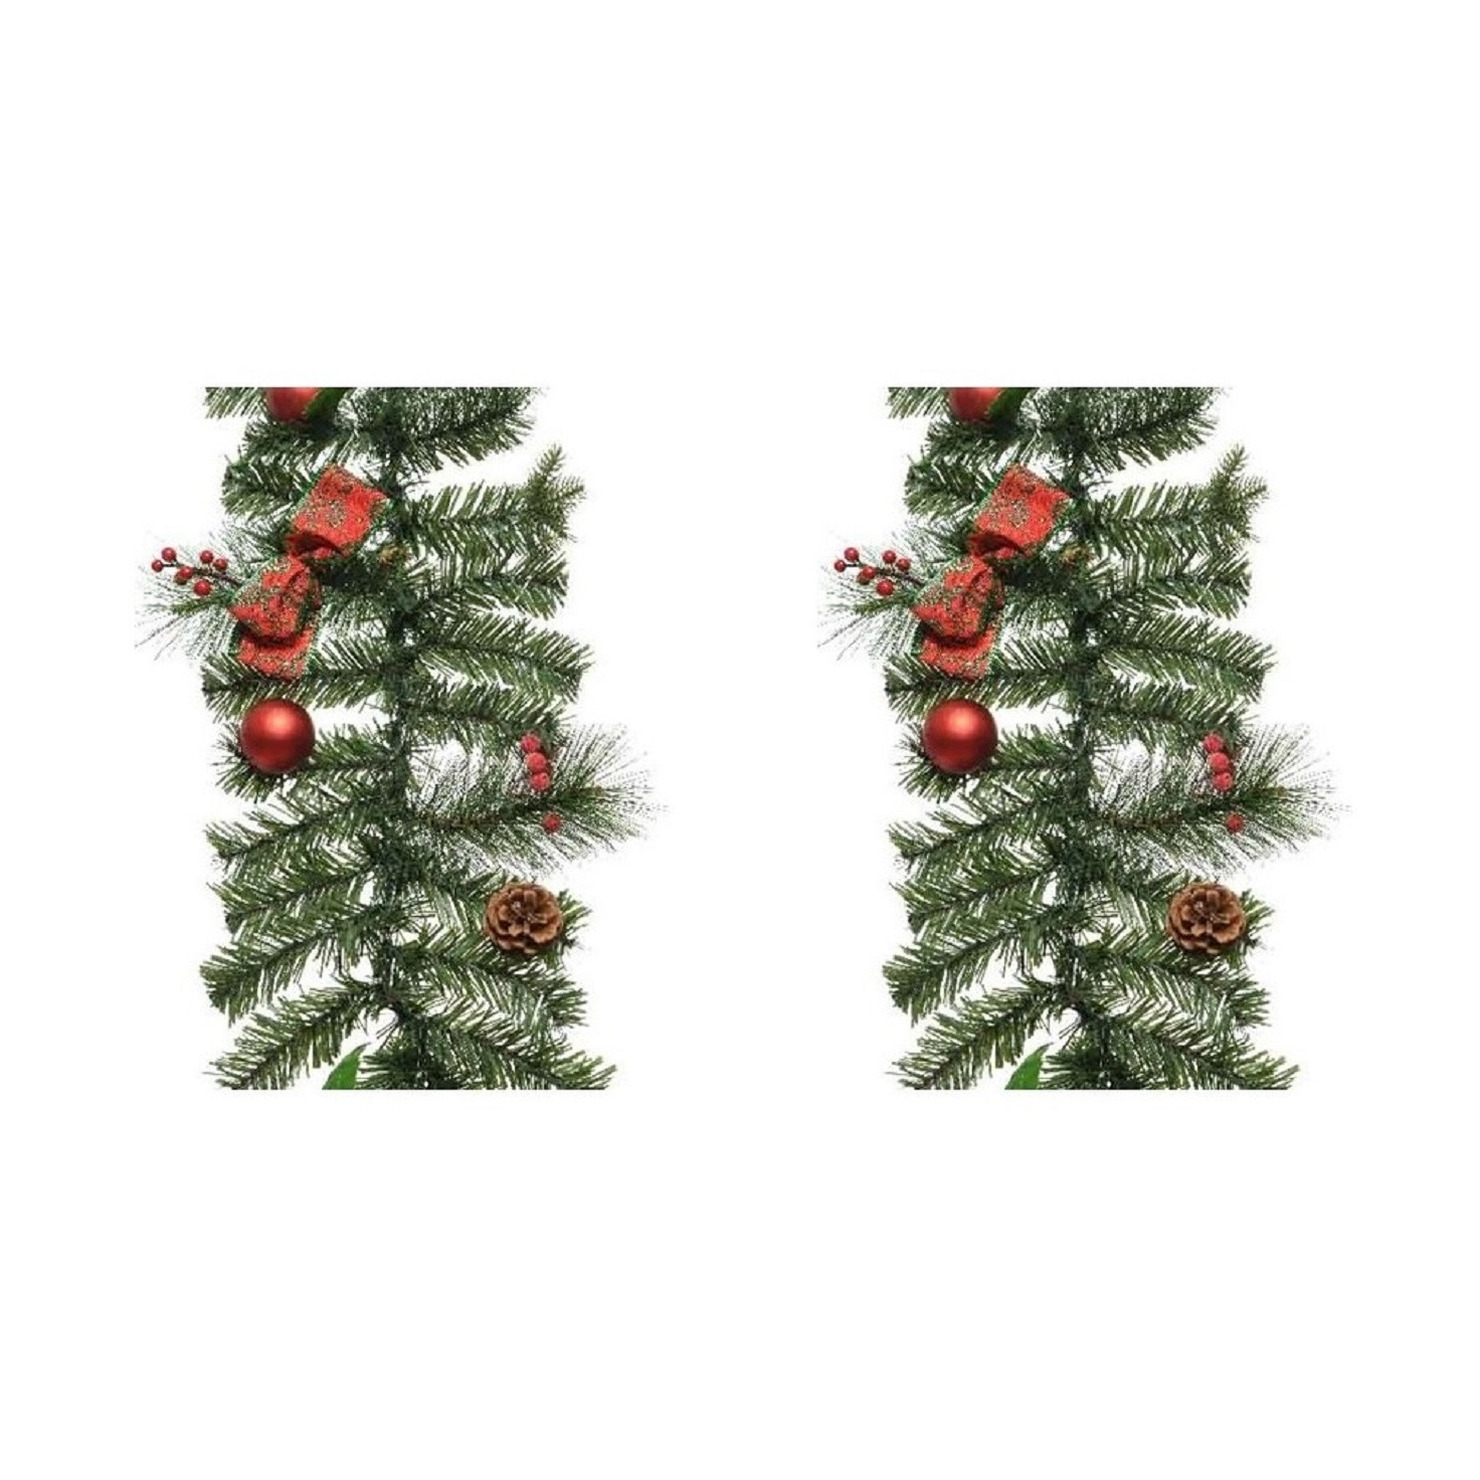 2x Kerst guirlande-slingers groen met rode versiering 180 cm dennenslinger versiering-decoratie